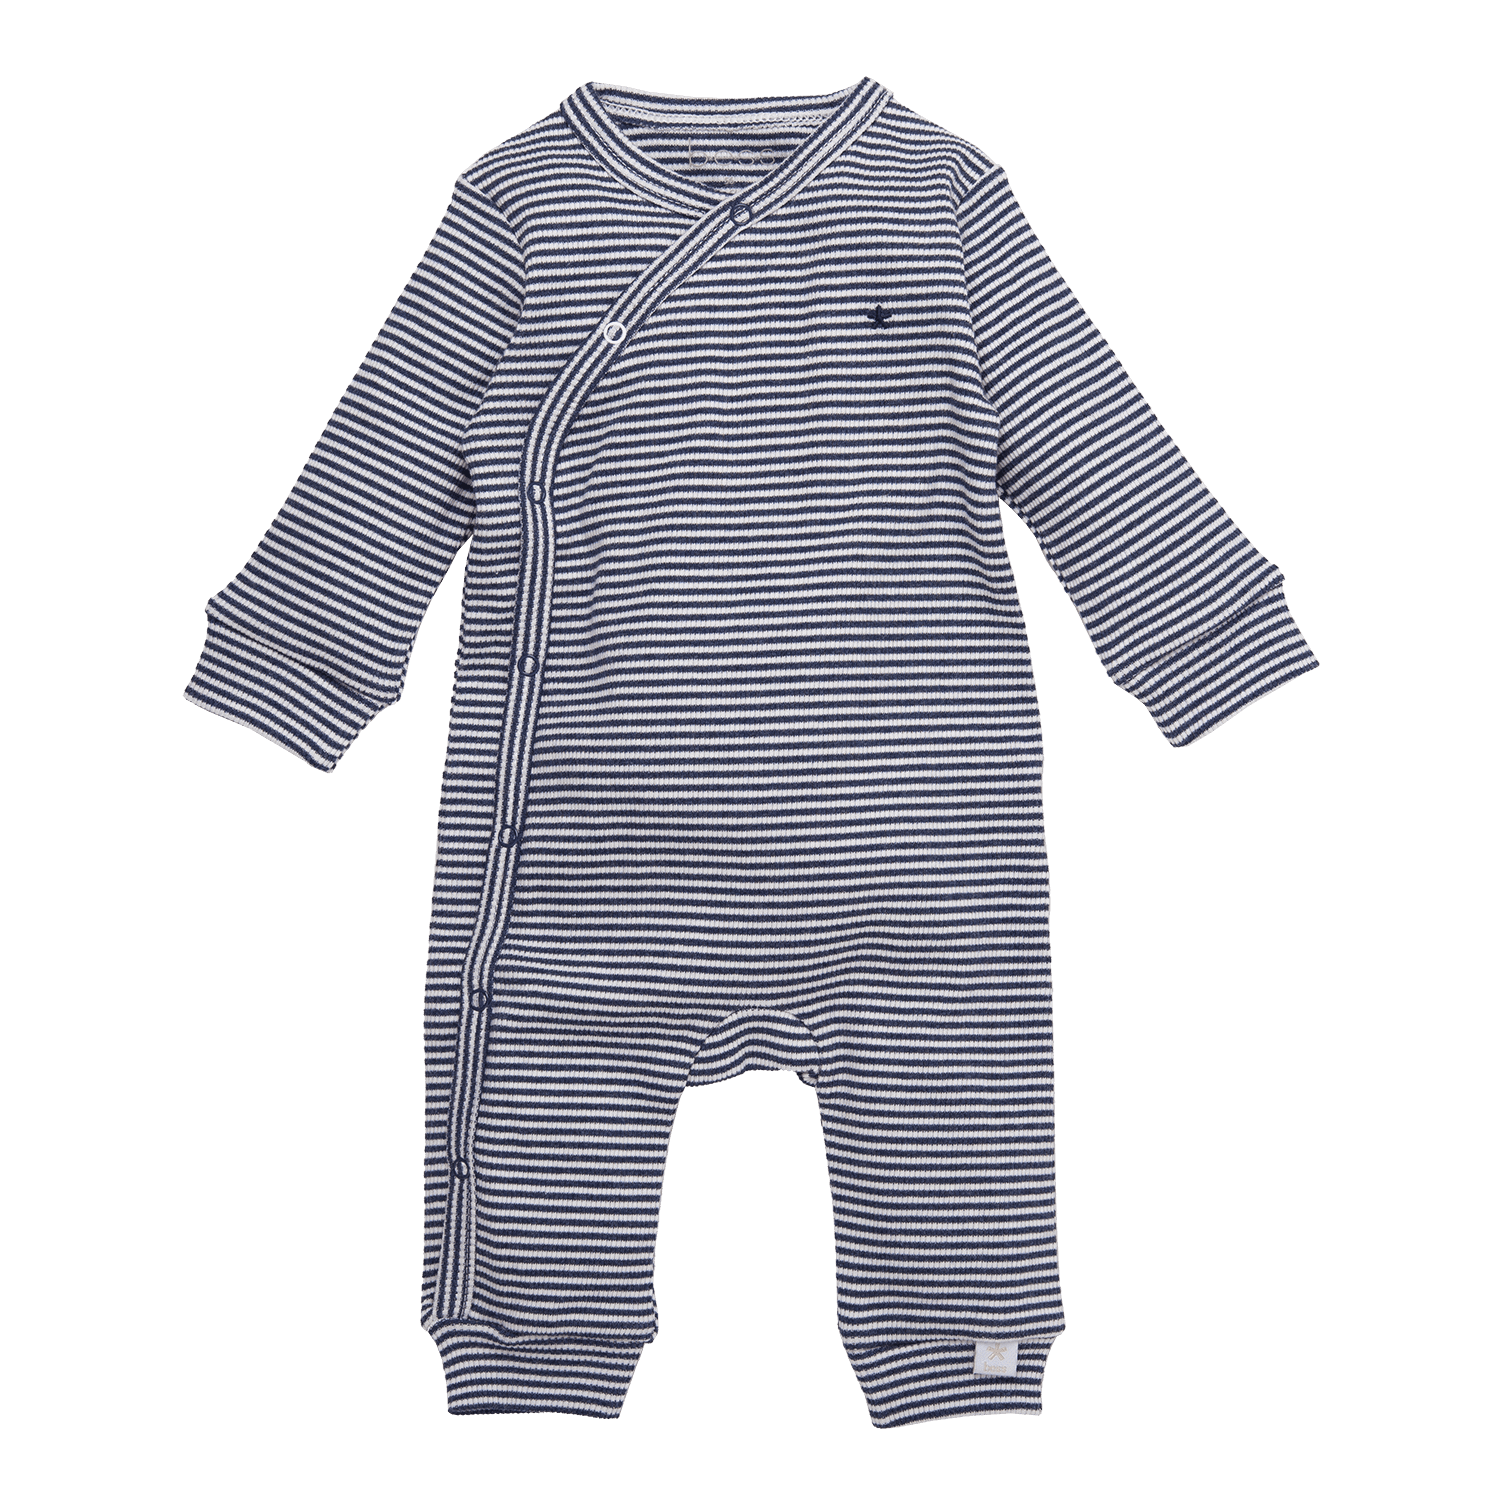 Boxpak Striped – Blue